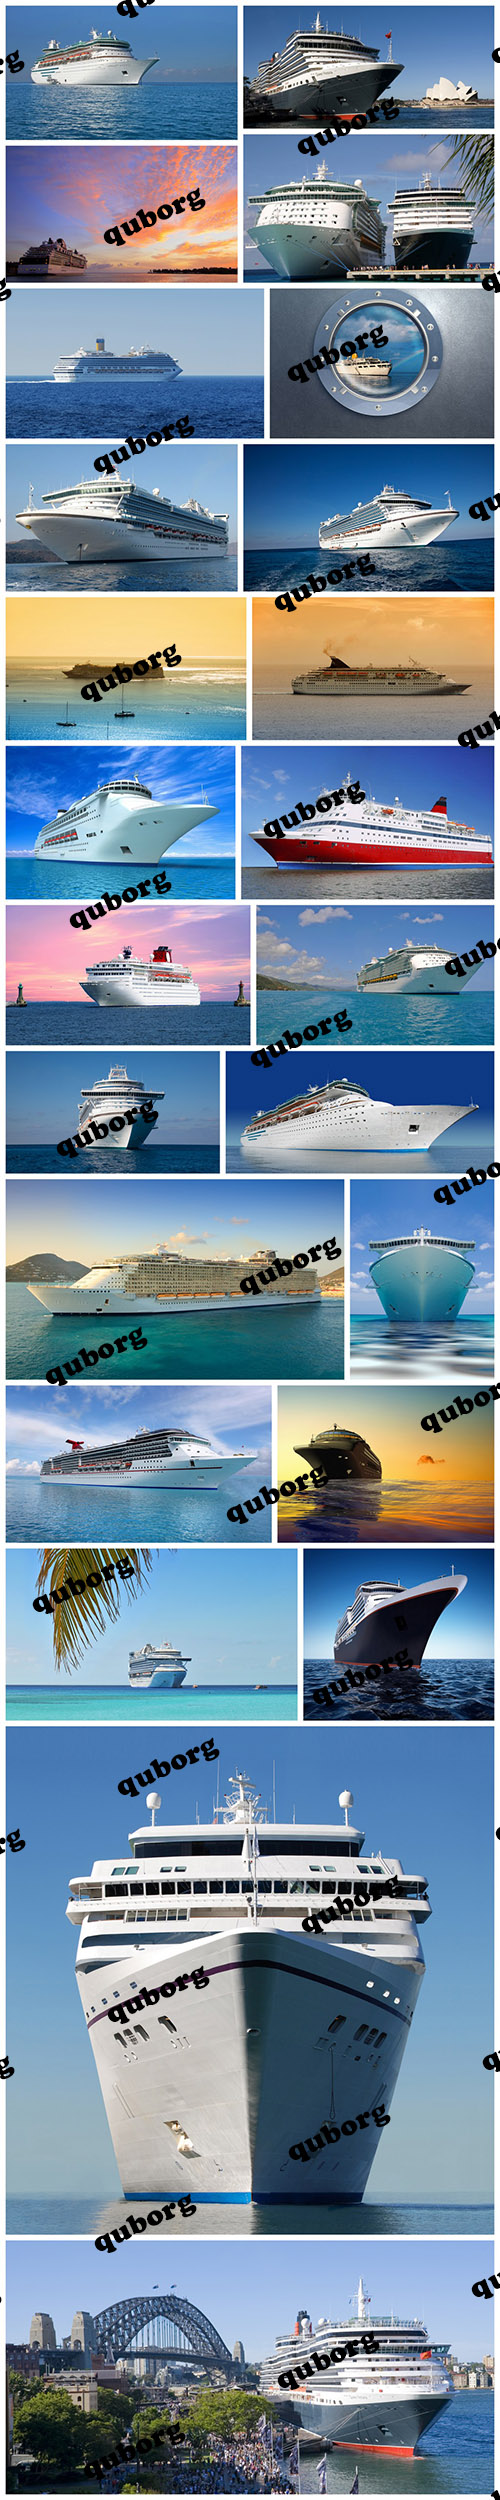 Stock Photos - Cruise Ships